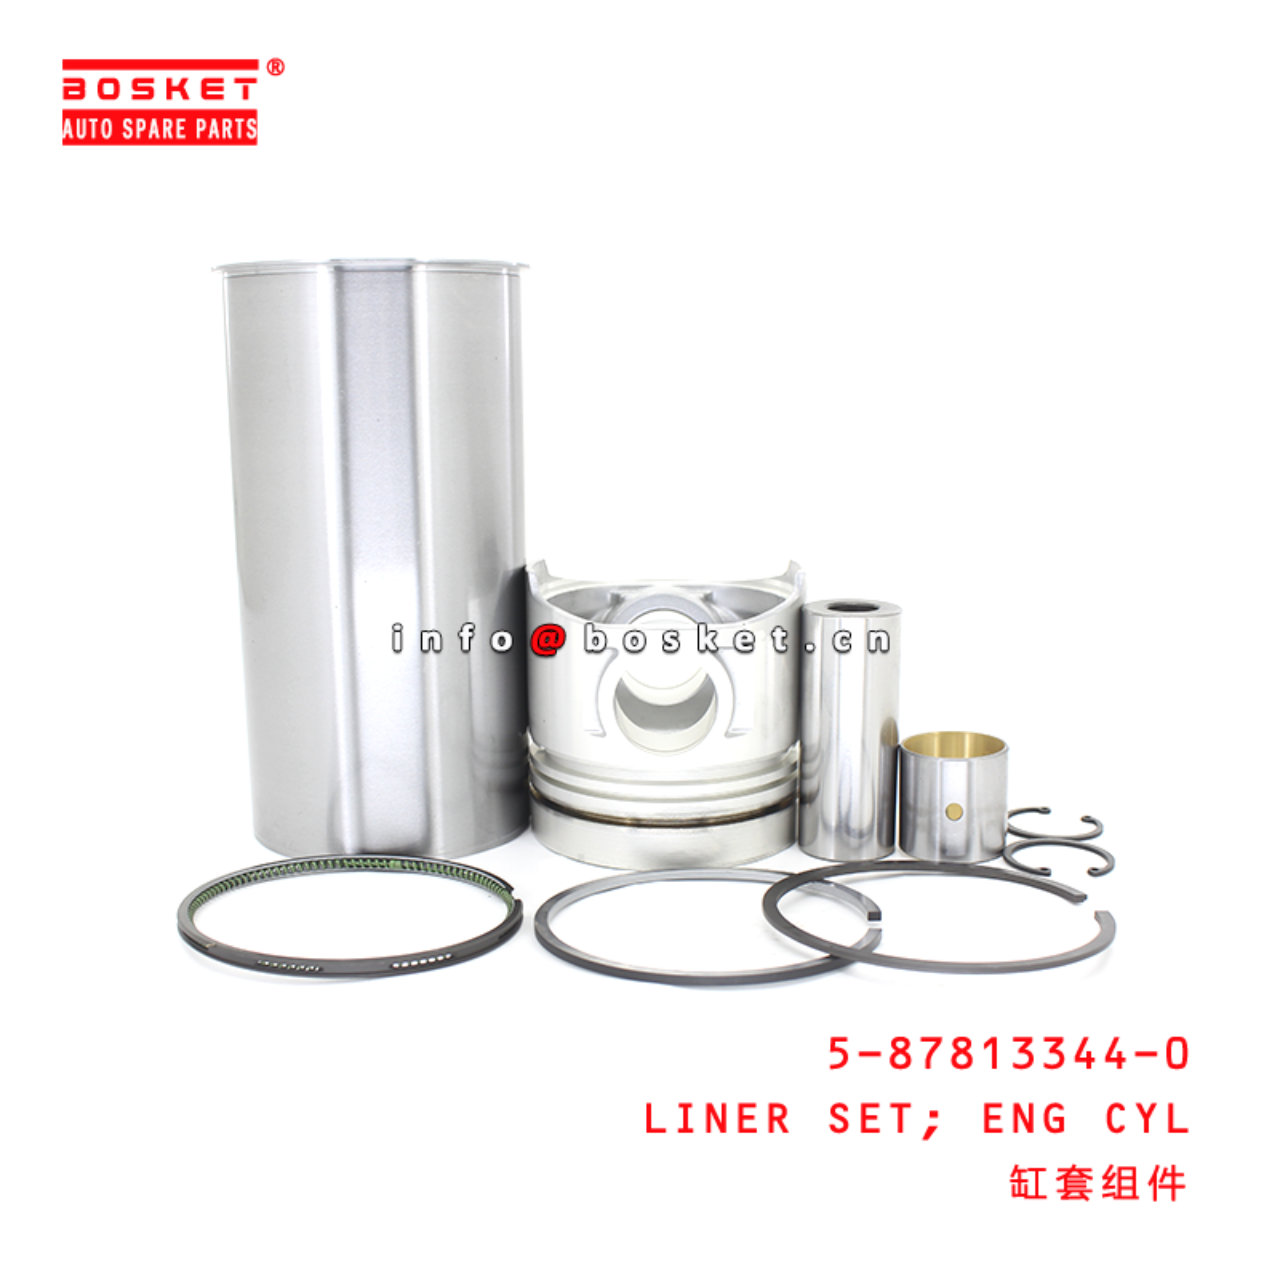 5-87813344-0 Engine Cylinder Liner Set suitable for ISUZU NPR59 4BD1T 5878133440